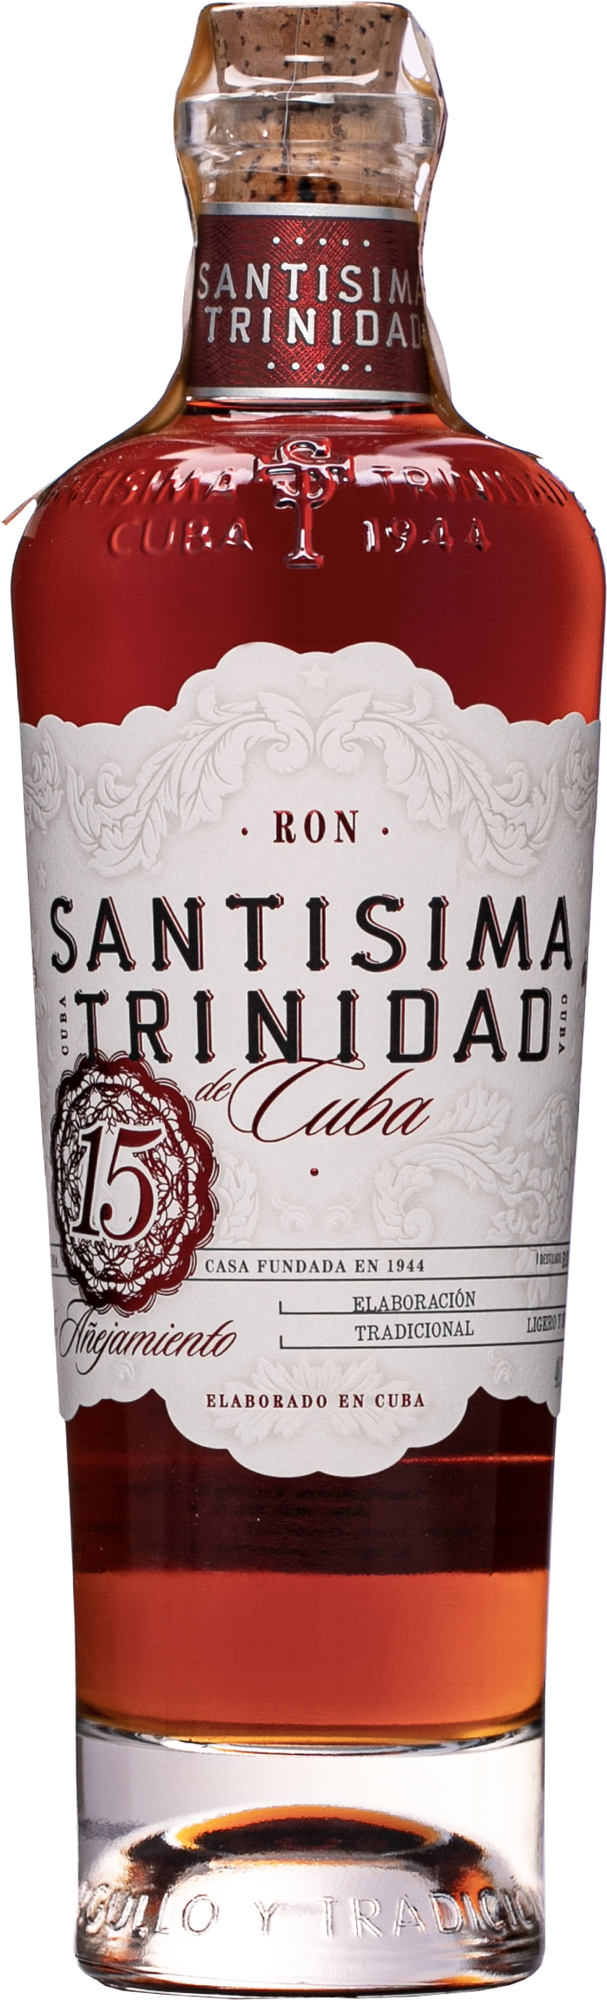 Santisima Trinidad 15 ročný 40,7% 0,7l (čistá fľaša)